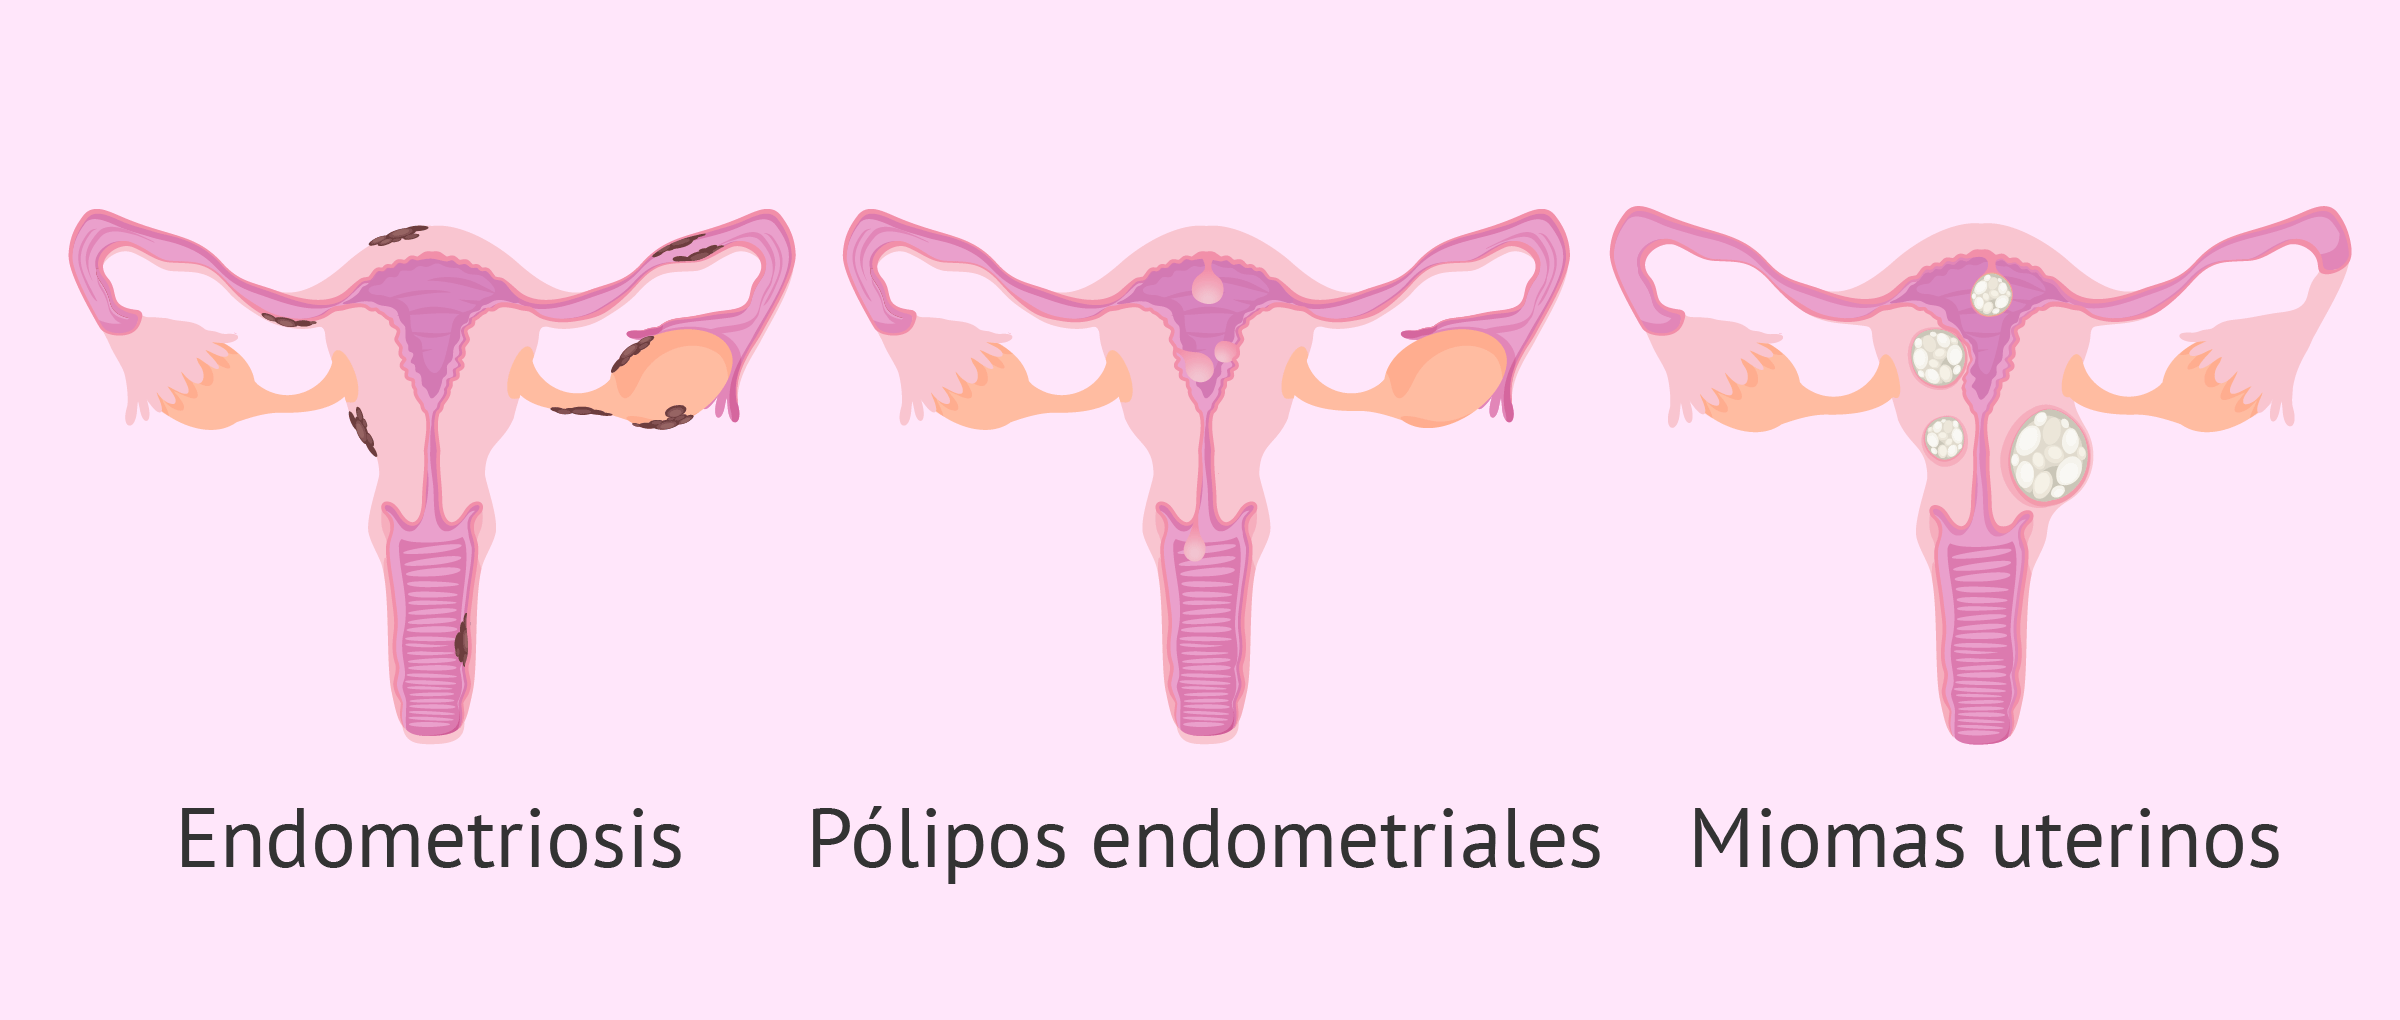 Qué es el endometrio